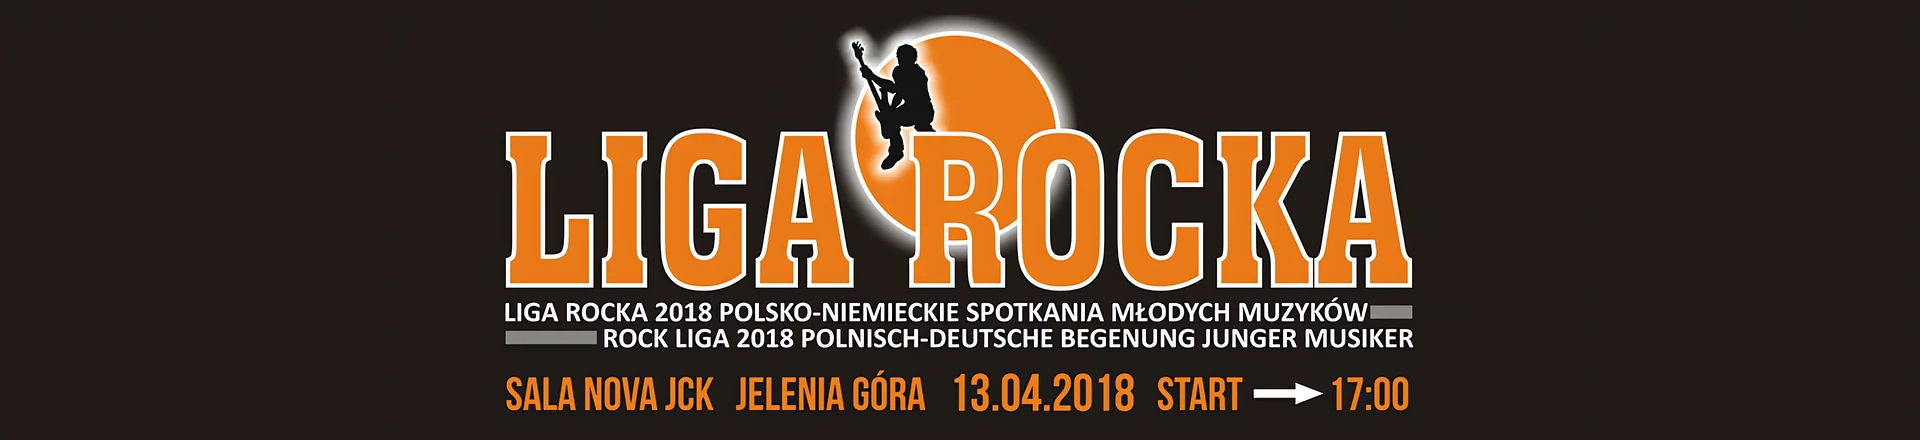 Liga Rocka | Polsko-niemieckie spotkania młodych muzyków